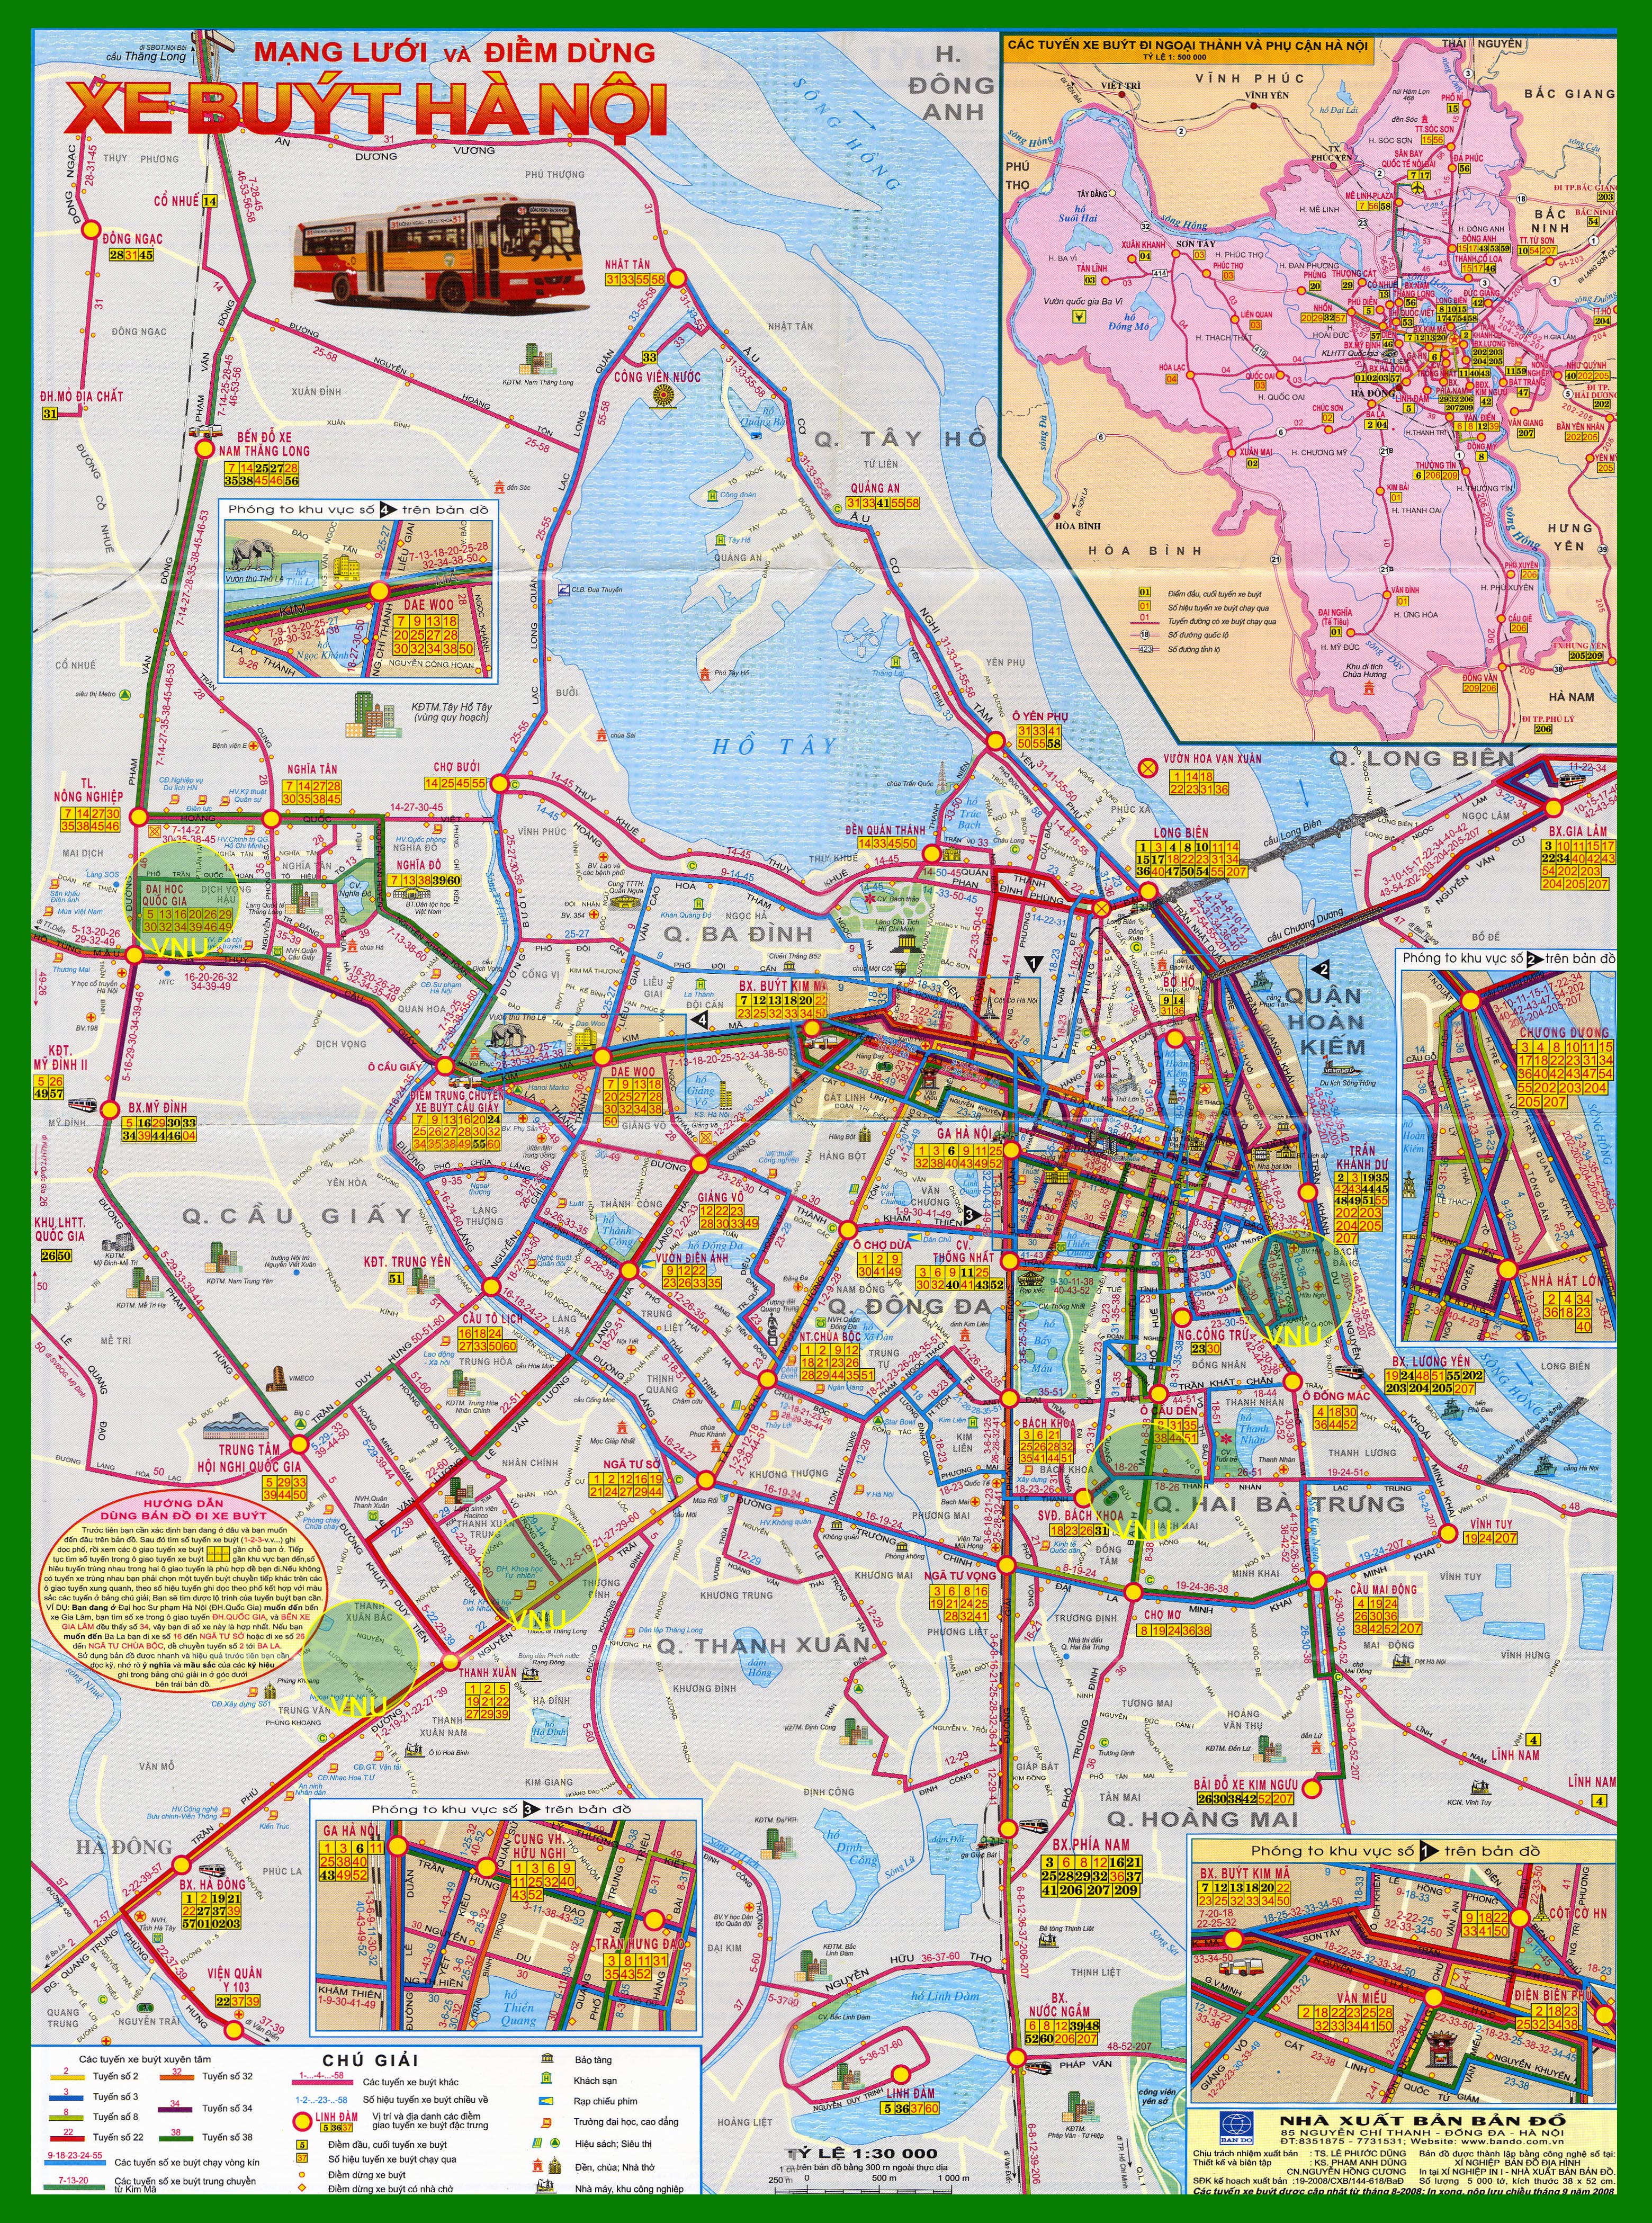 Sắp tới năm 2024, bản đồ tuyến xe buýt Hà Nội sẽ cập nhật thường xuyên, giúp cho việc di chuyển của bạn trở thành một trải nghiệm dễ dàng hơn bao giờ hết. Bạn sẽ không còn phải lo lắng về việc mất hướng hay nhầm tuyến khi đi xe buýt nữa.